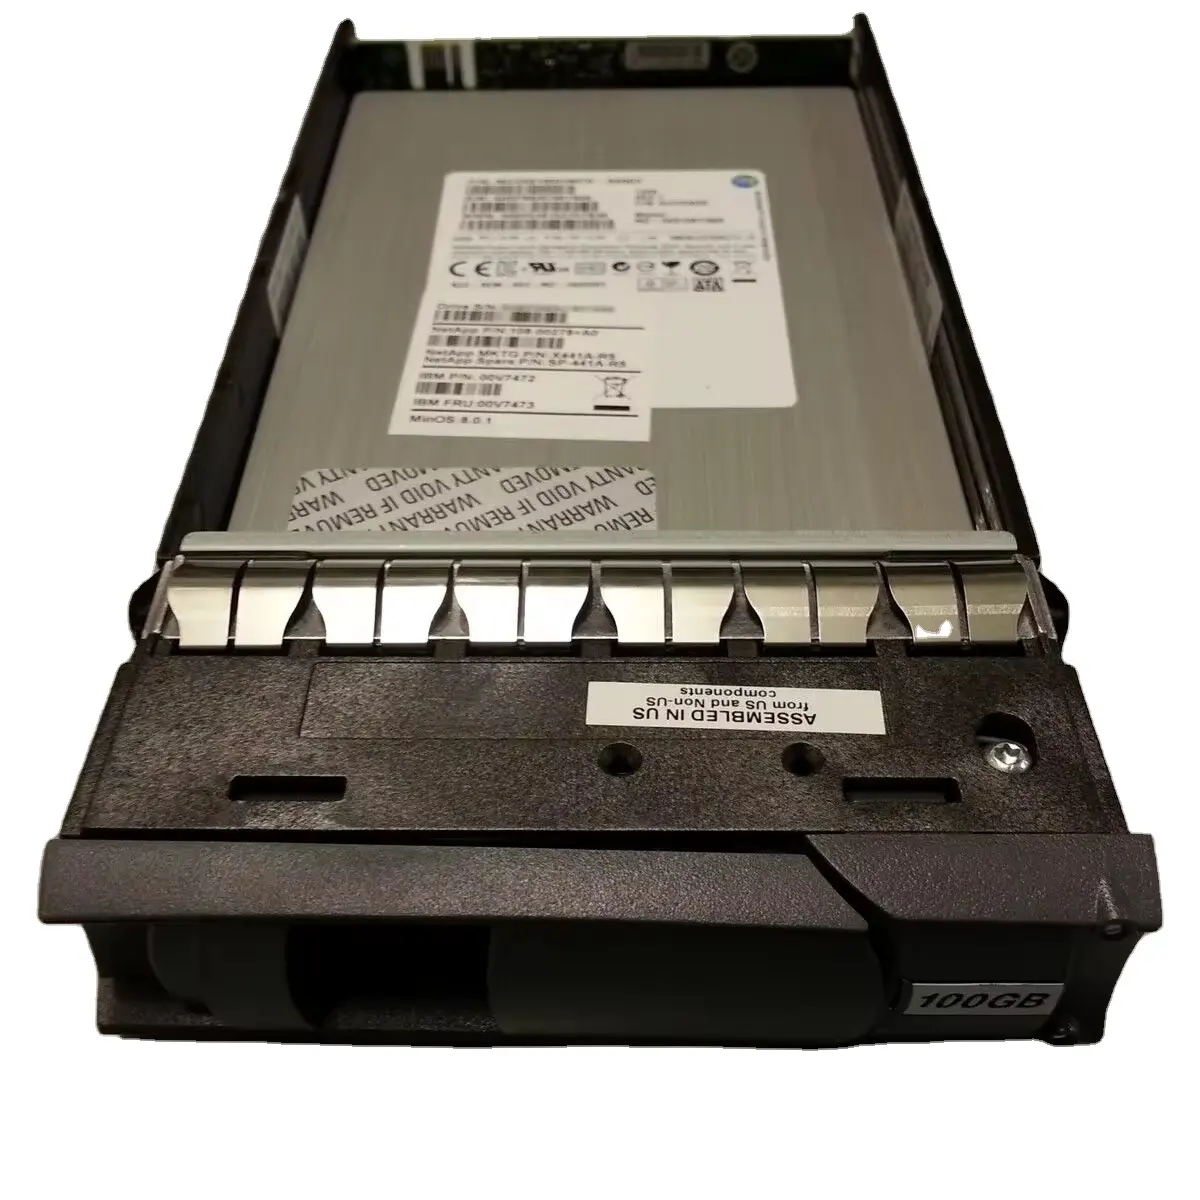 Disco rígido de alto desempenho Netapp X441A-R5 100GB SAS 6G LFF SSD